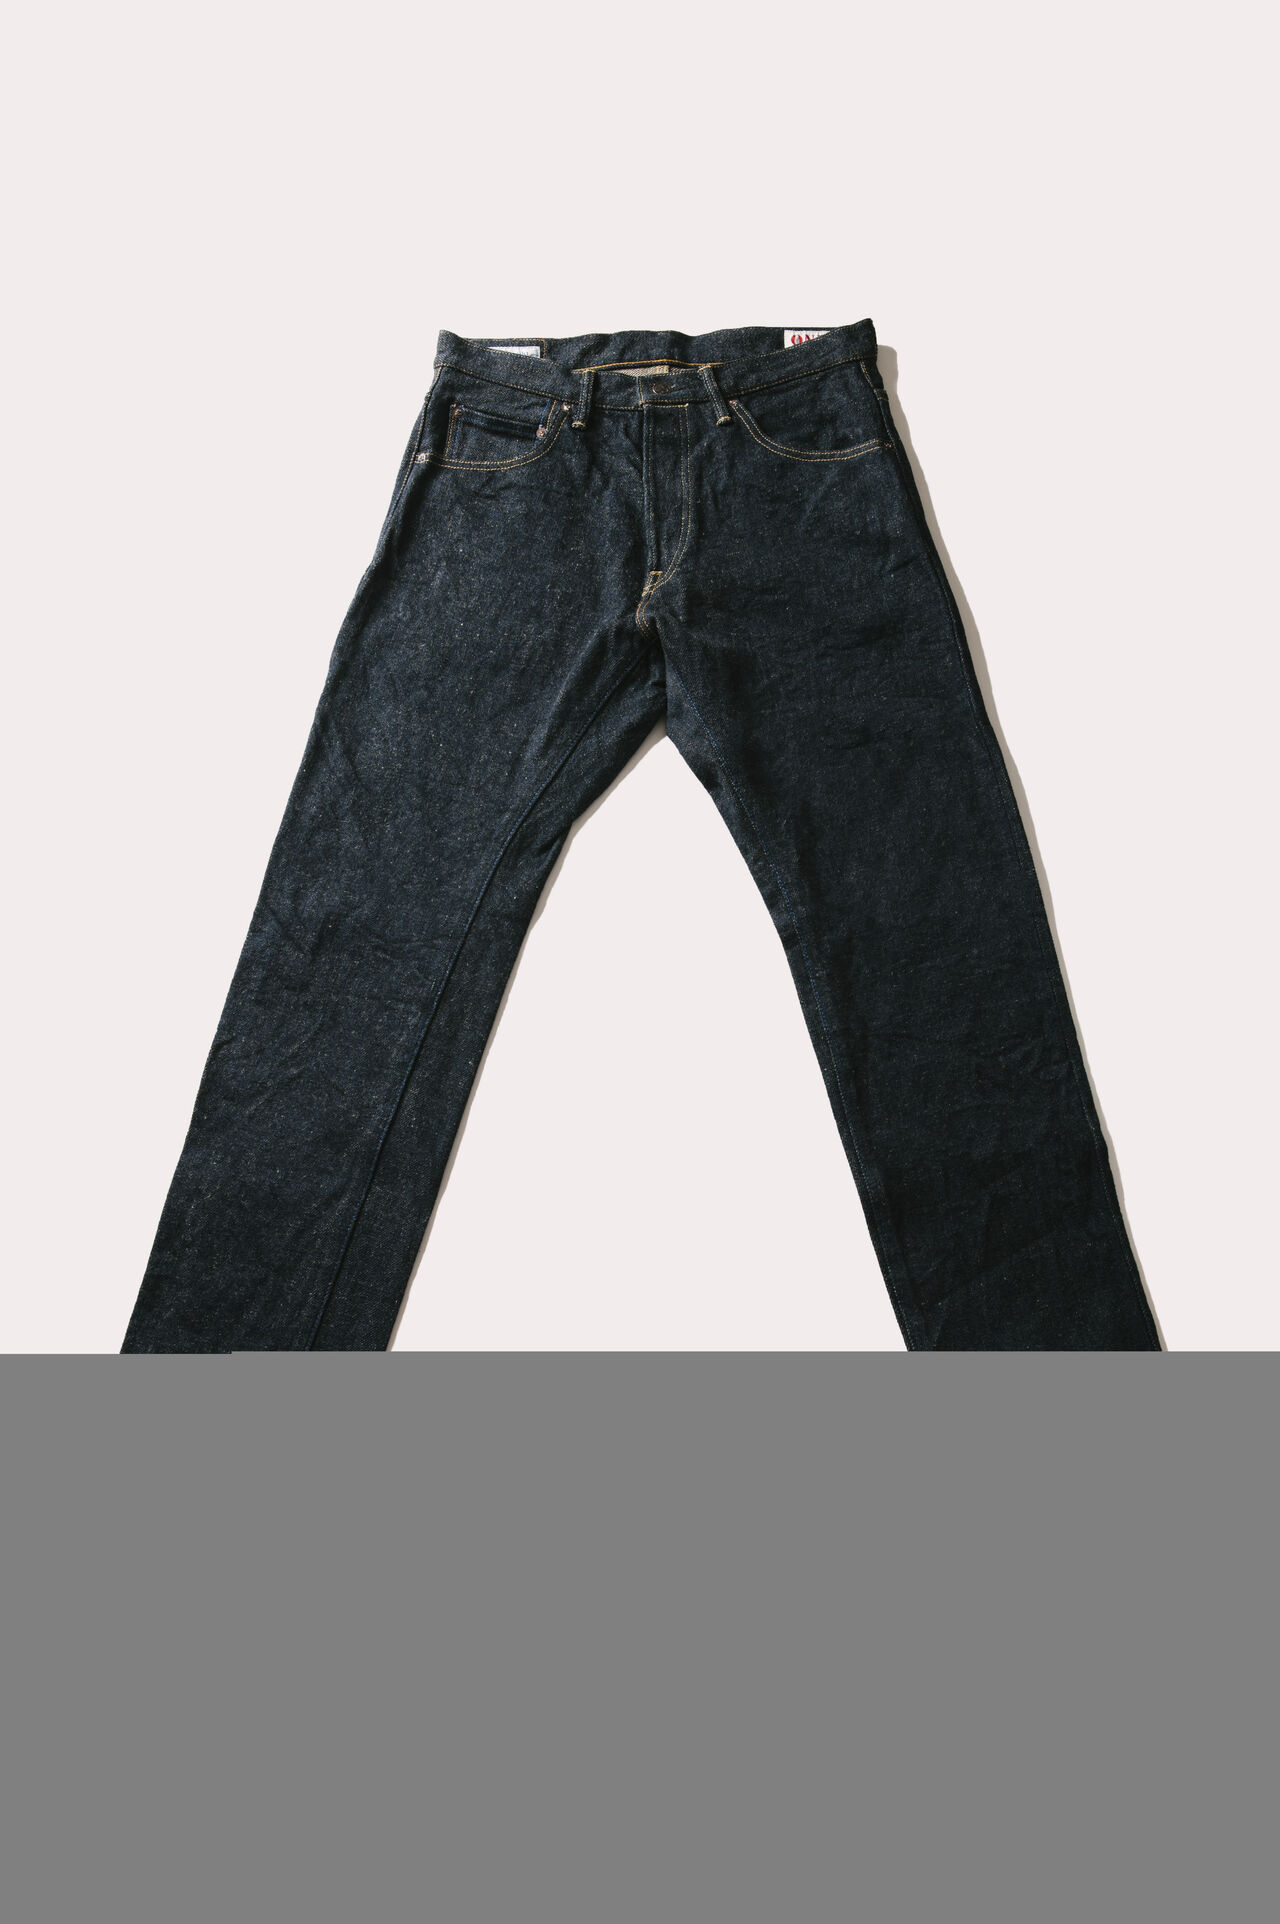 OTHT ONI x TANUKI Collaboration 21.5oz Secret Denim High Rise Tapered Jeans,, large image number 5